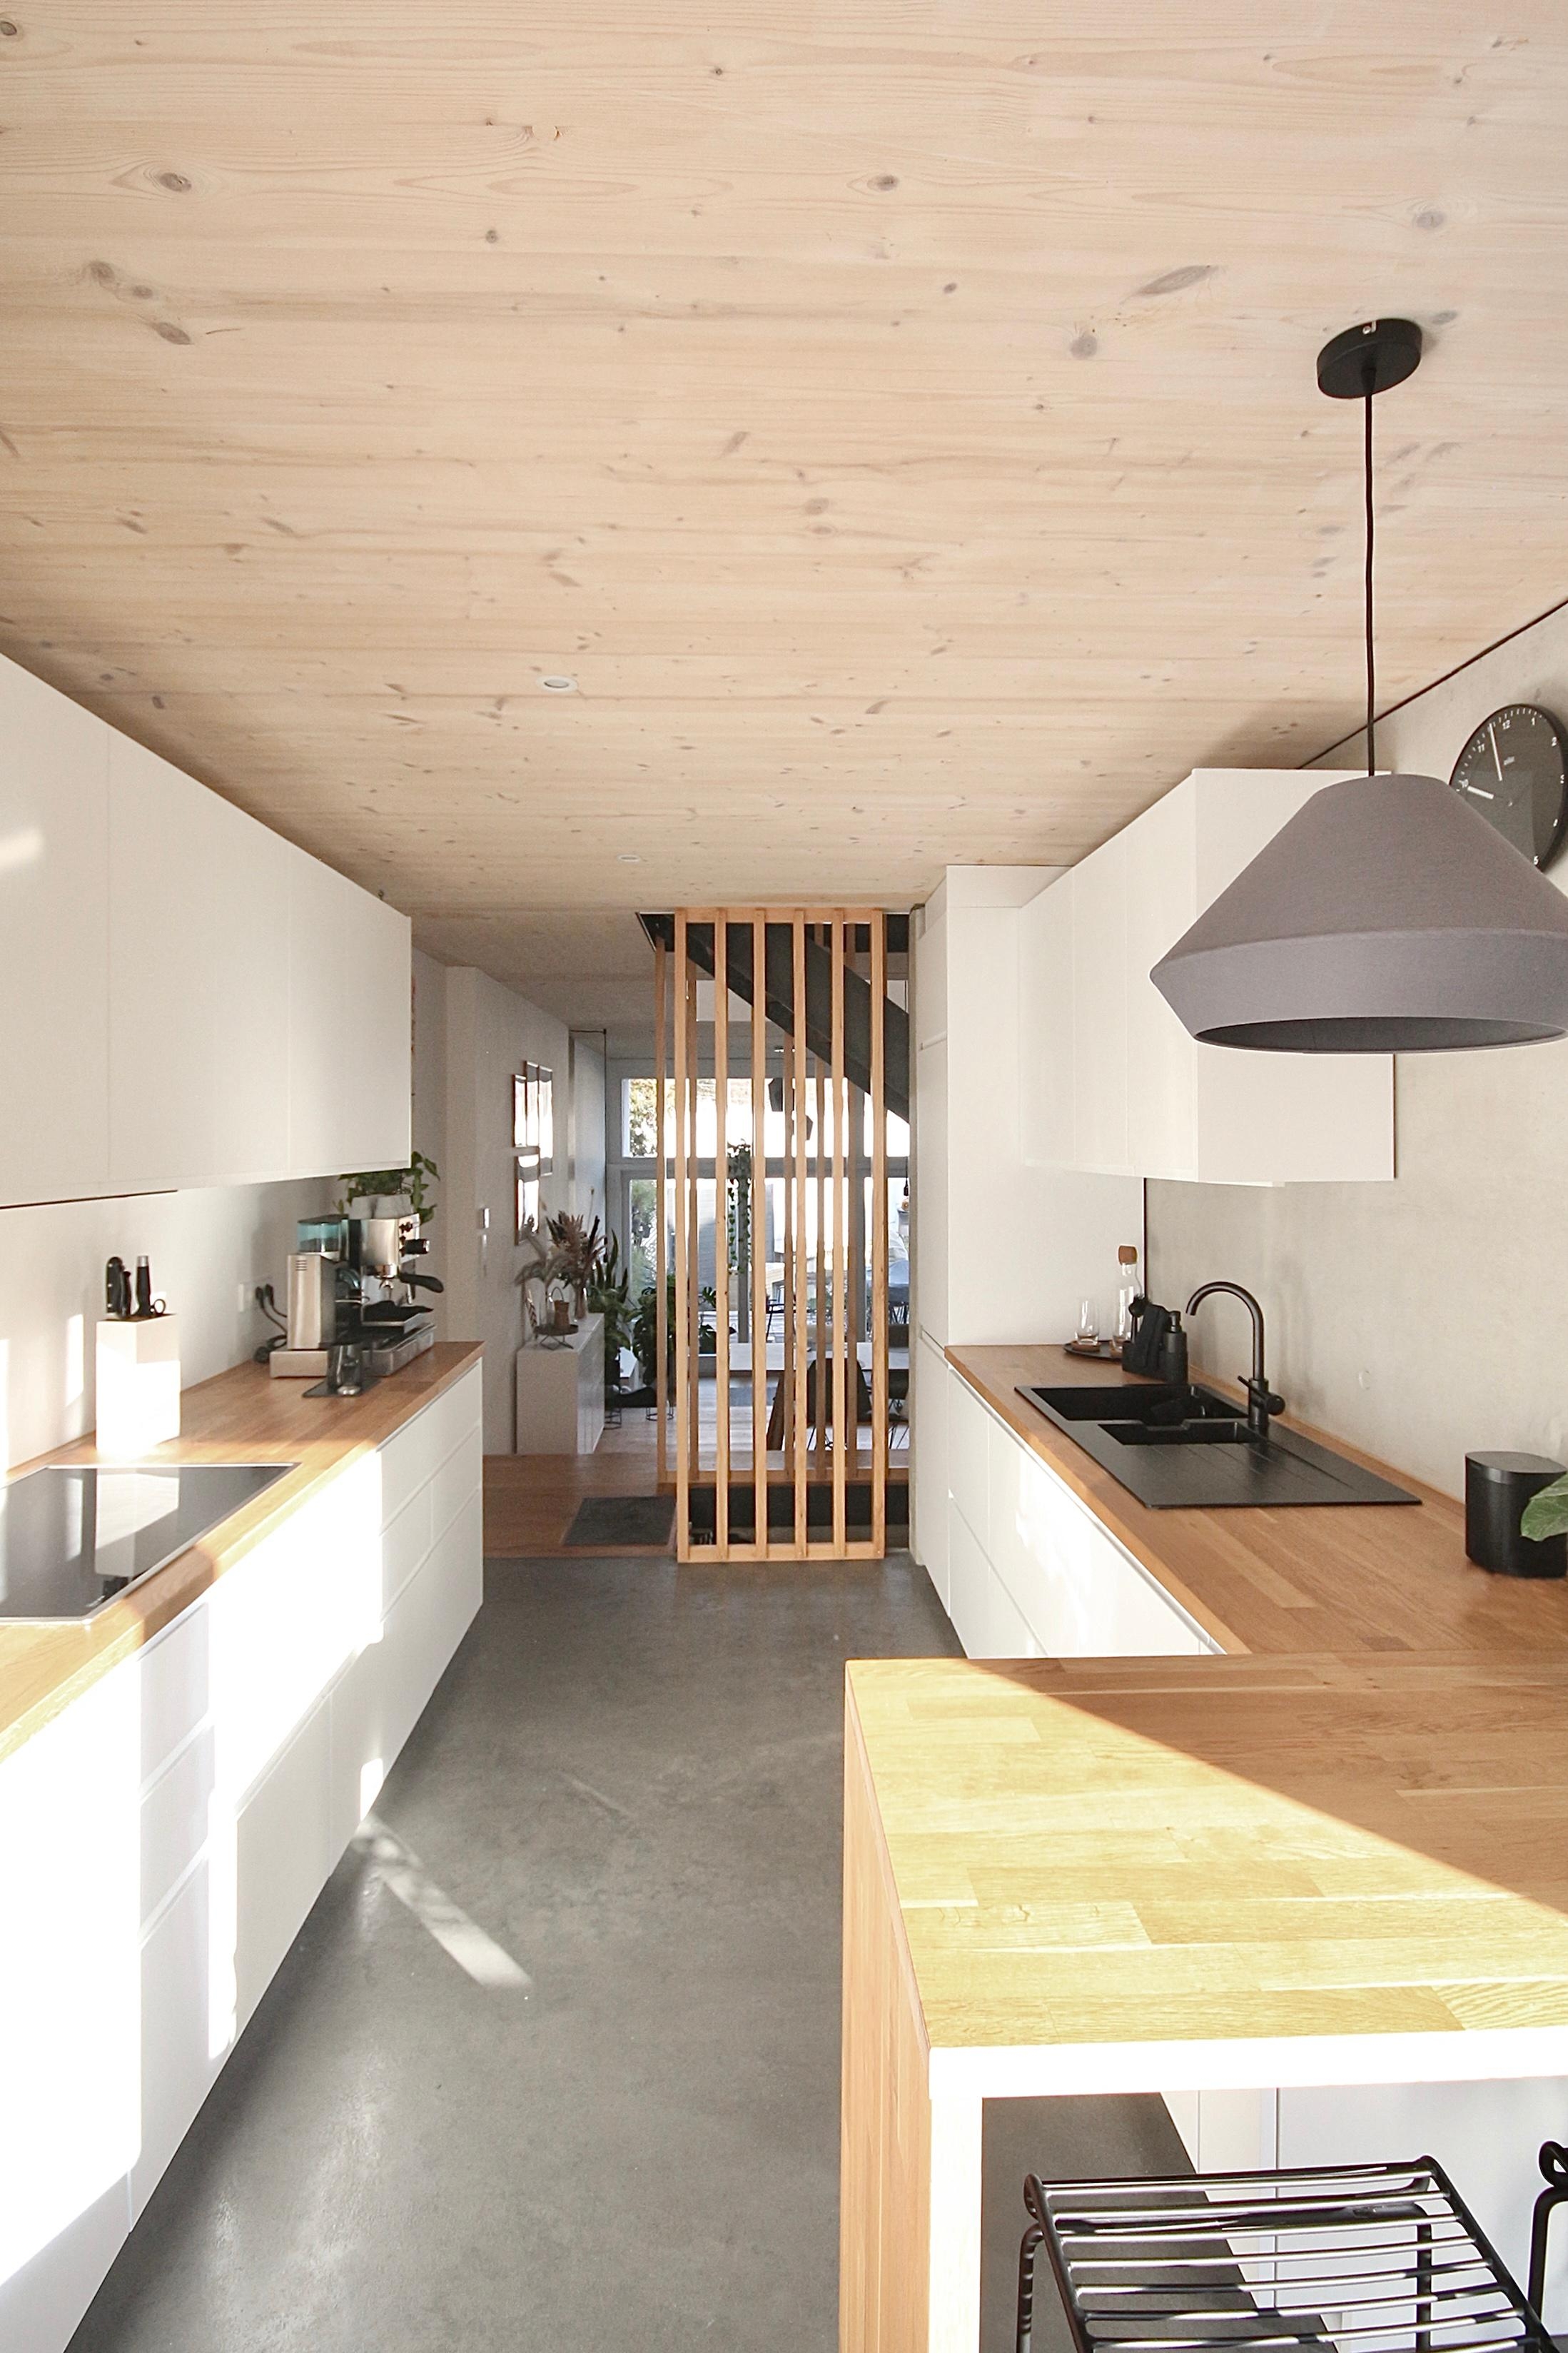 #architecturedesign #architectureporn #kitchen #whitekitchen #concrete #wood #architecturedesign #woodlovers #holzbau 